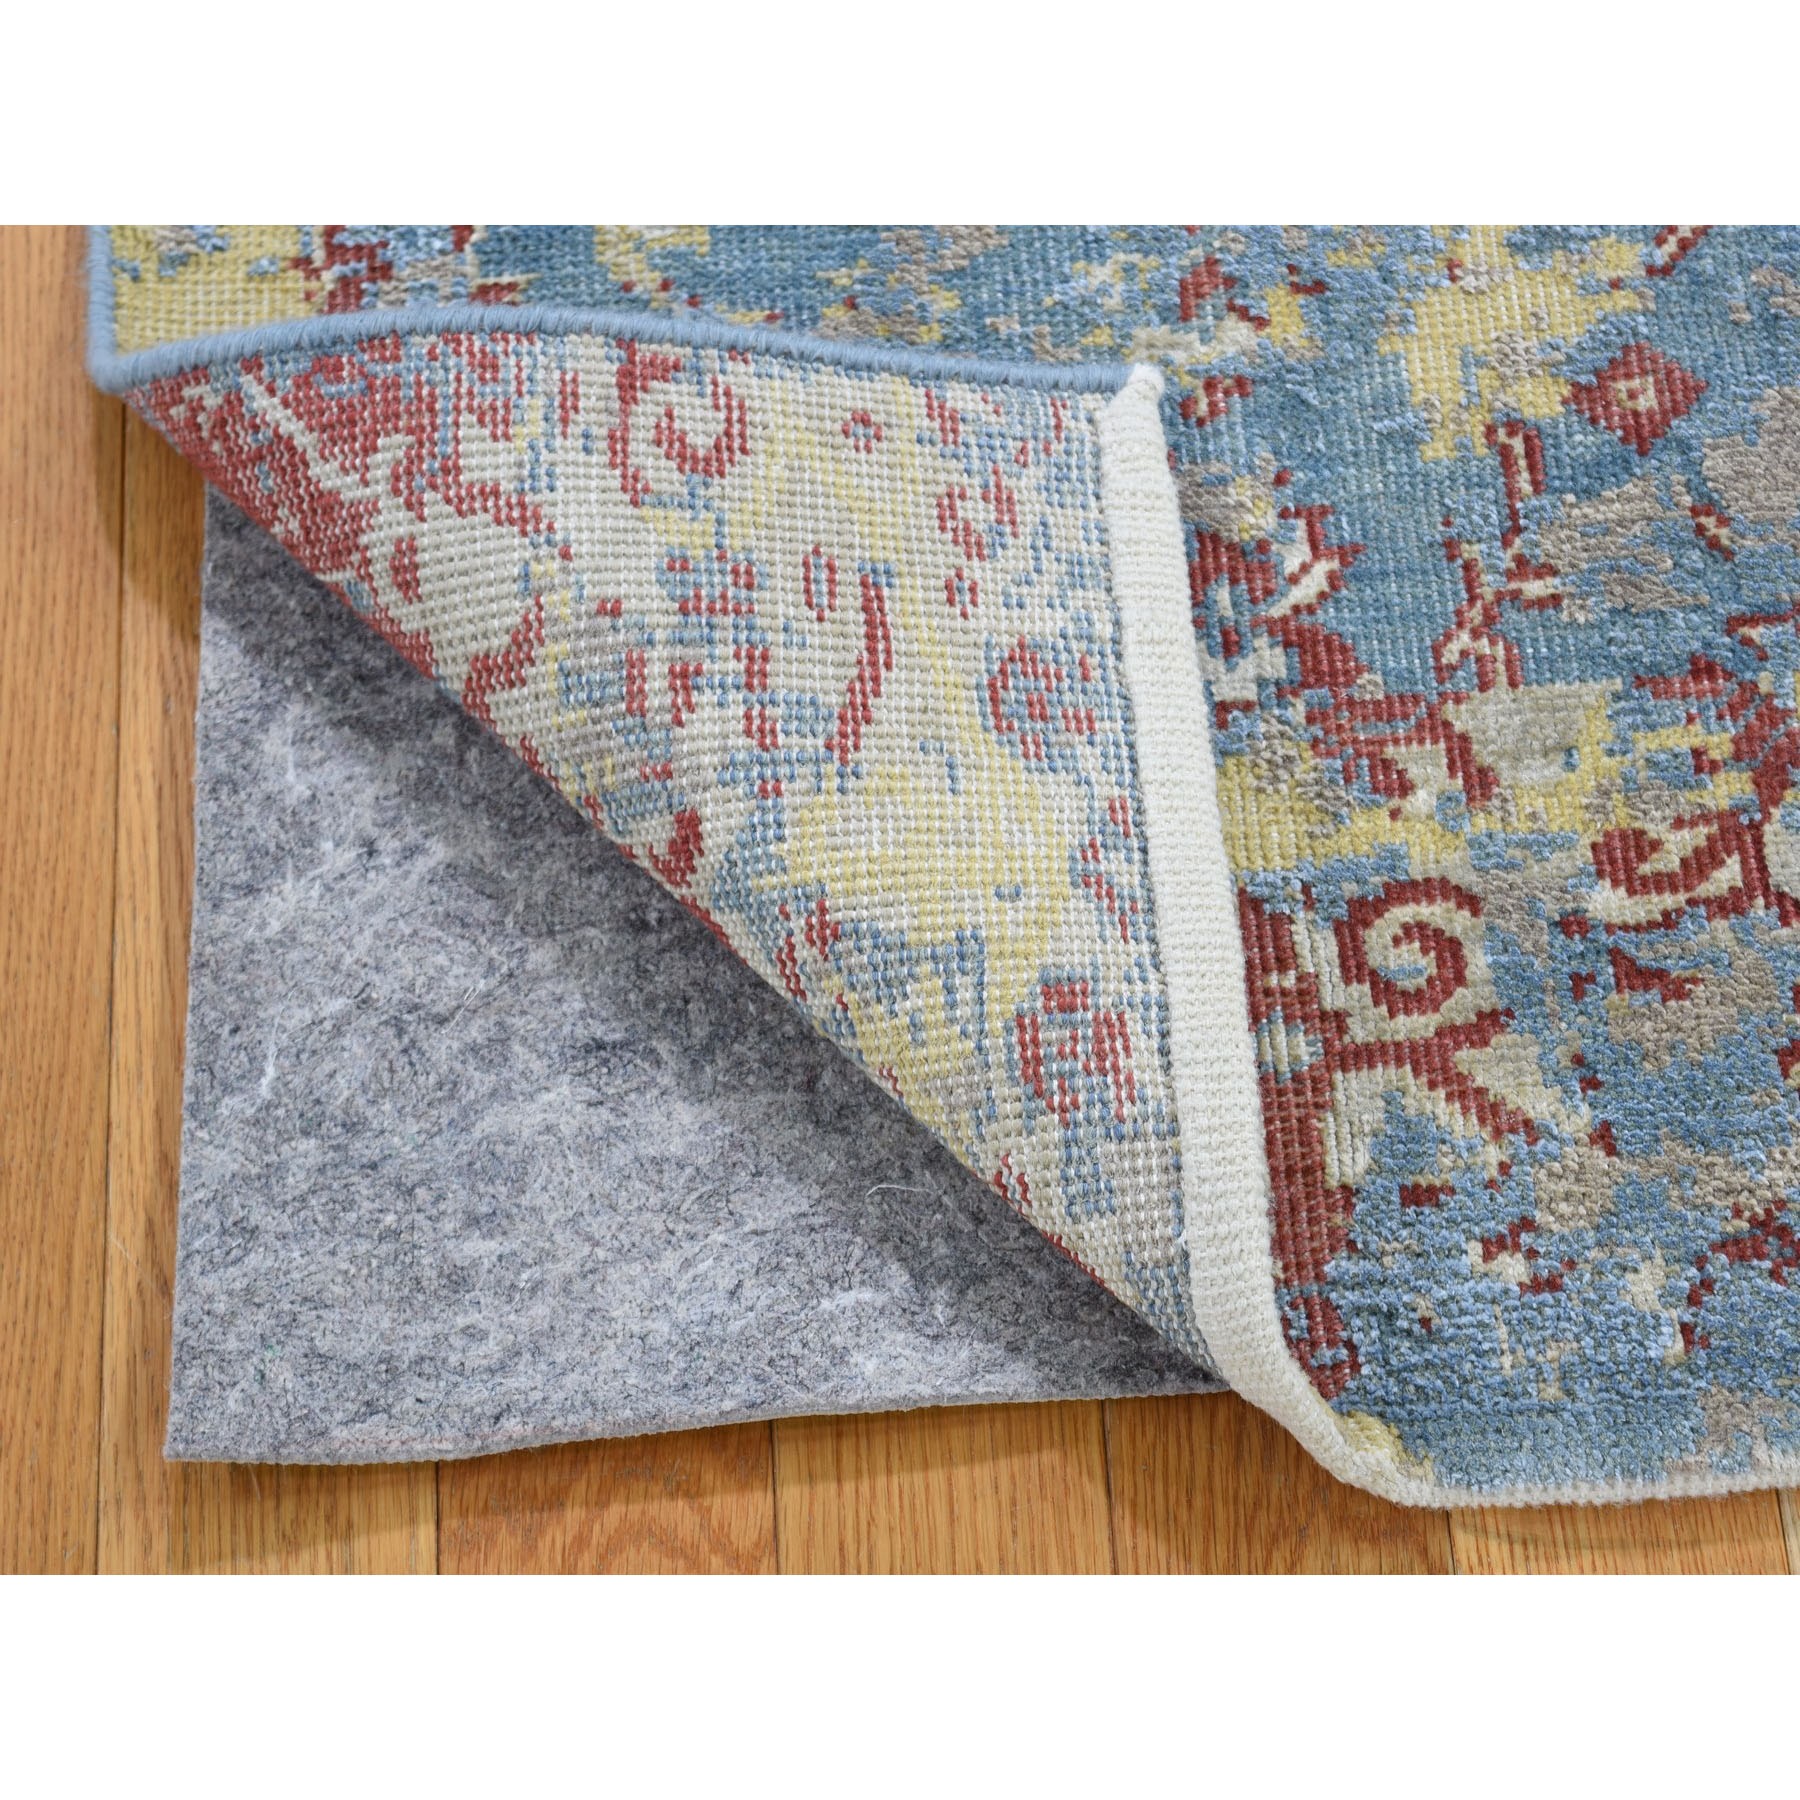 2-x3- Silk With Textured Wool Broken Design Hand Knotted Oriental Rug 